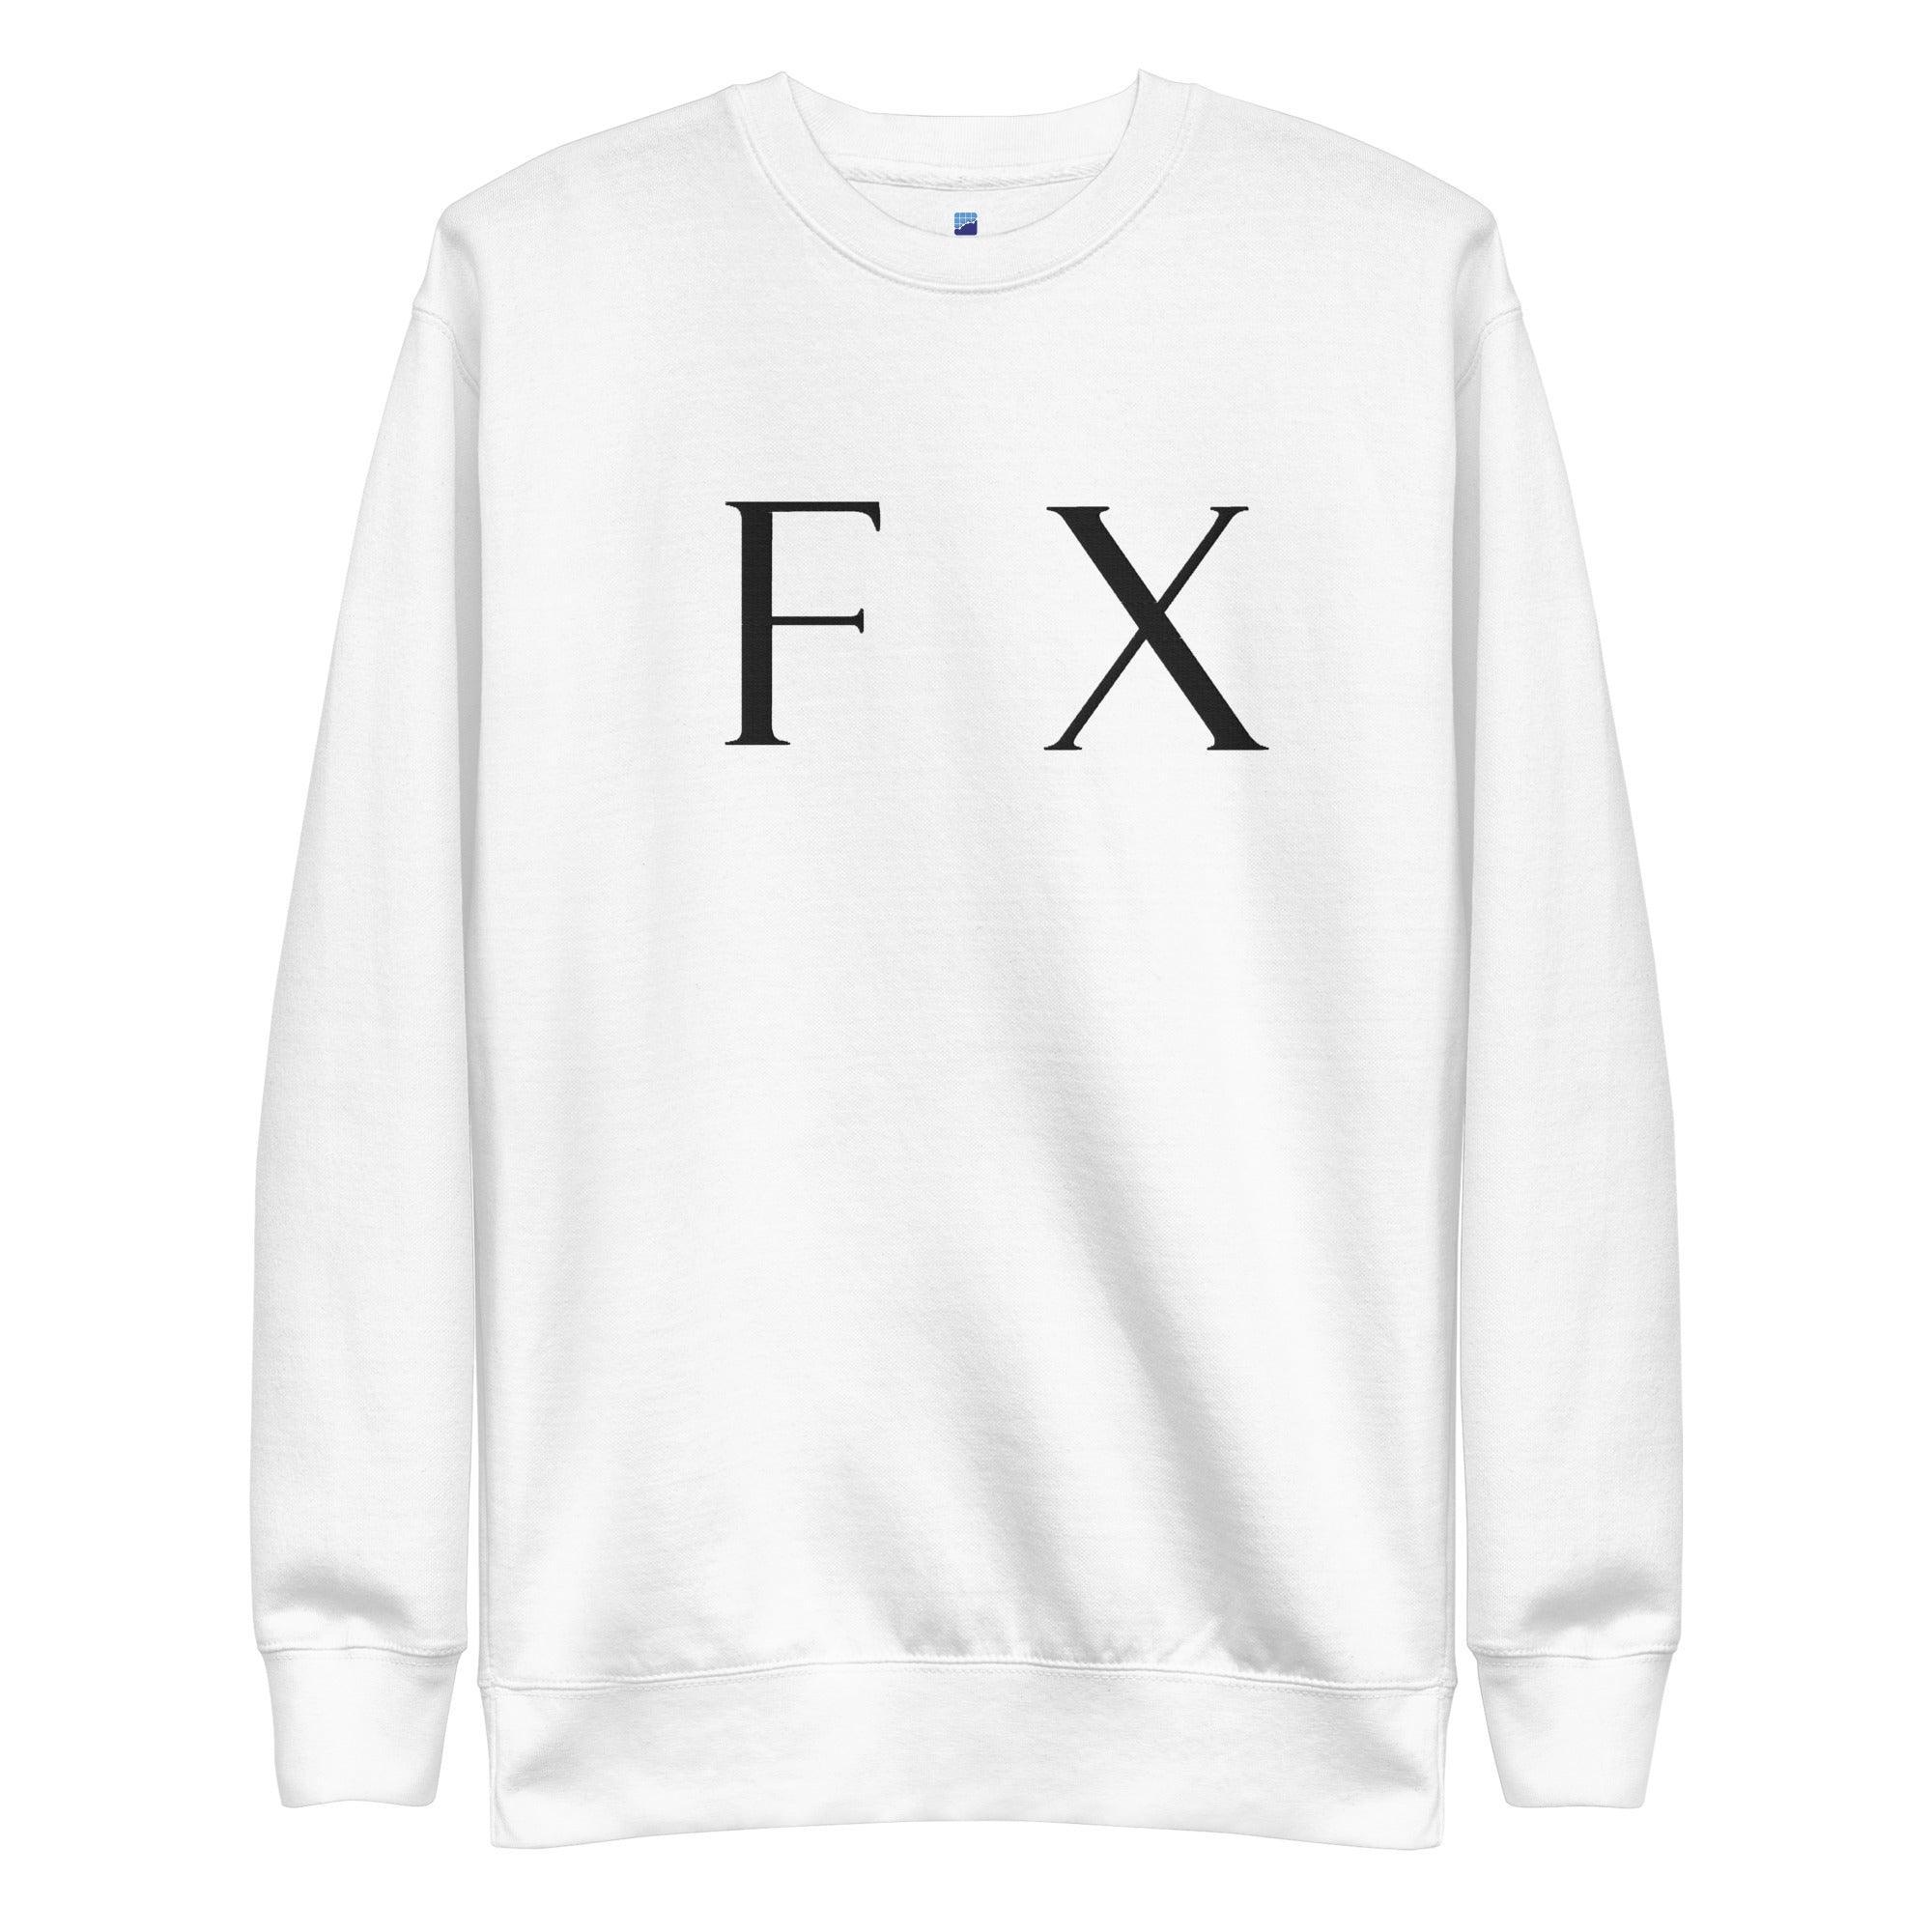 FX | Forex Sweatshirt - InvestmenTees